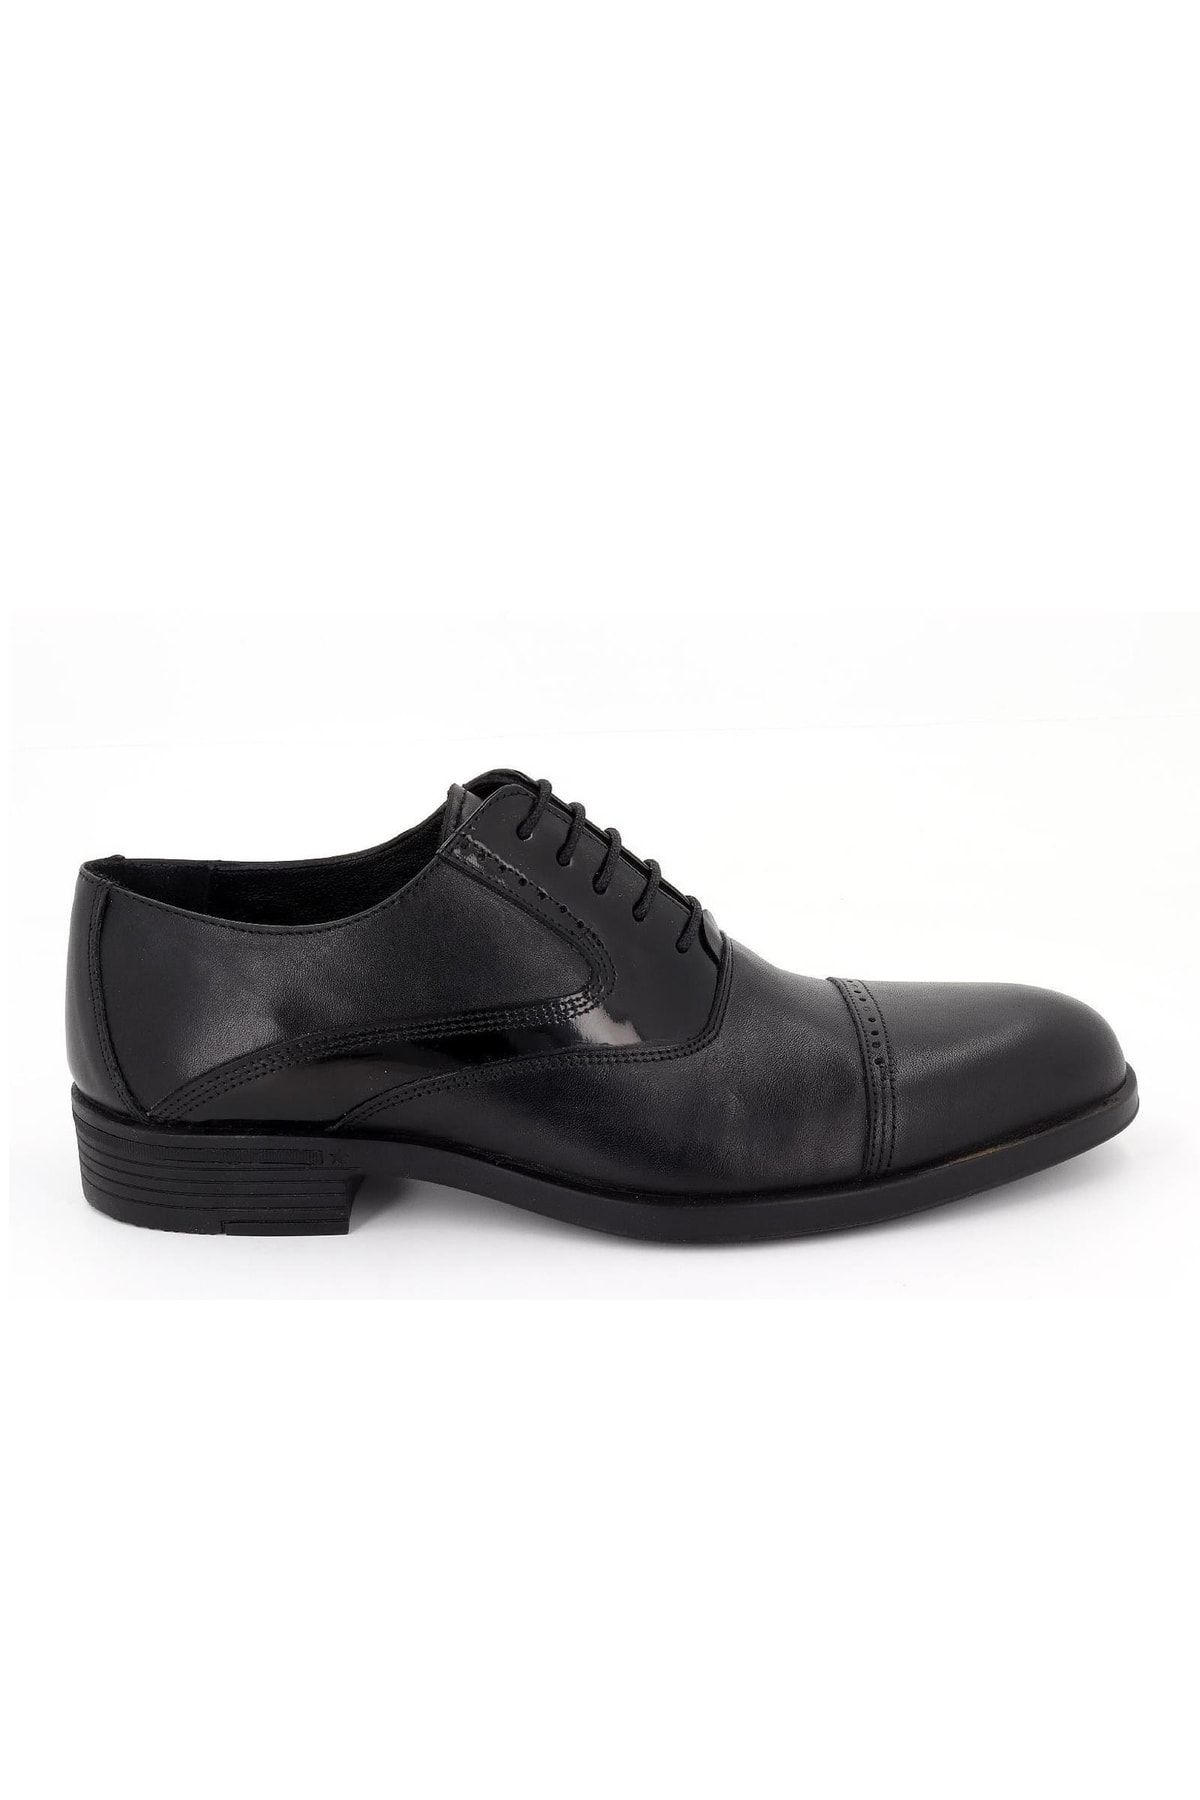 Hobby 2318-06 Deri Klasik Erkek Ayakkabı Modeli